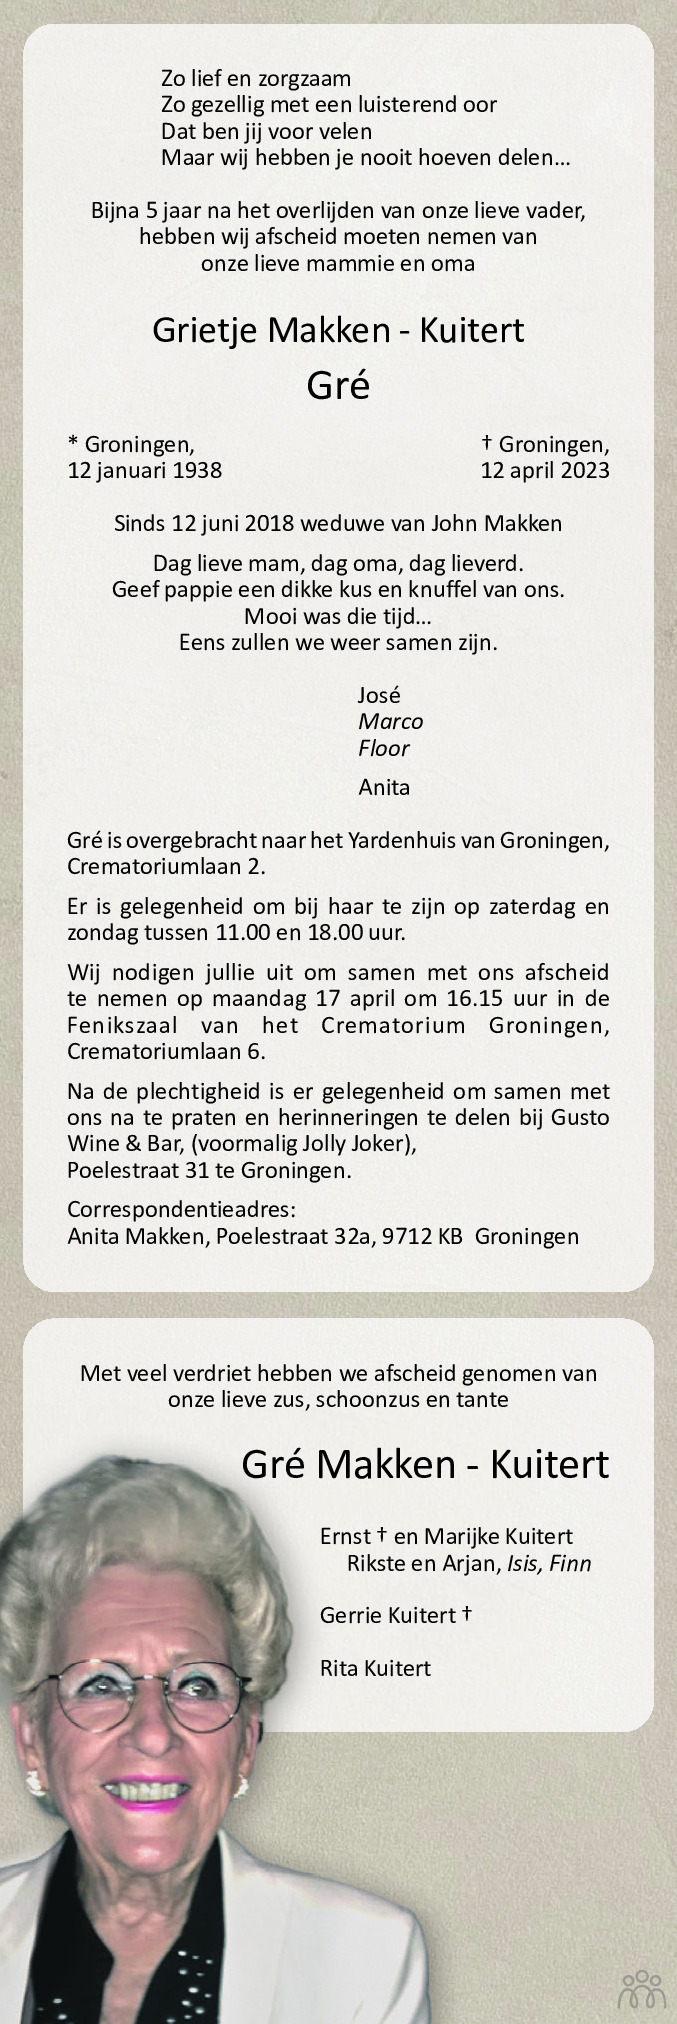 Overlijdensbericht van Grietje (Gré)  Makken-Kuitert in Dagblad van het Noorden